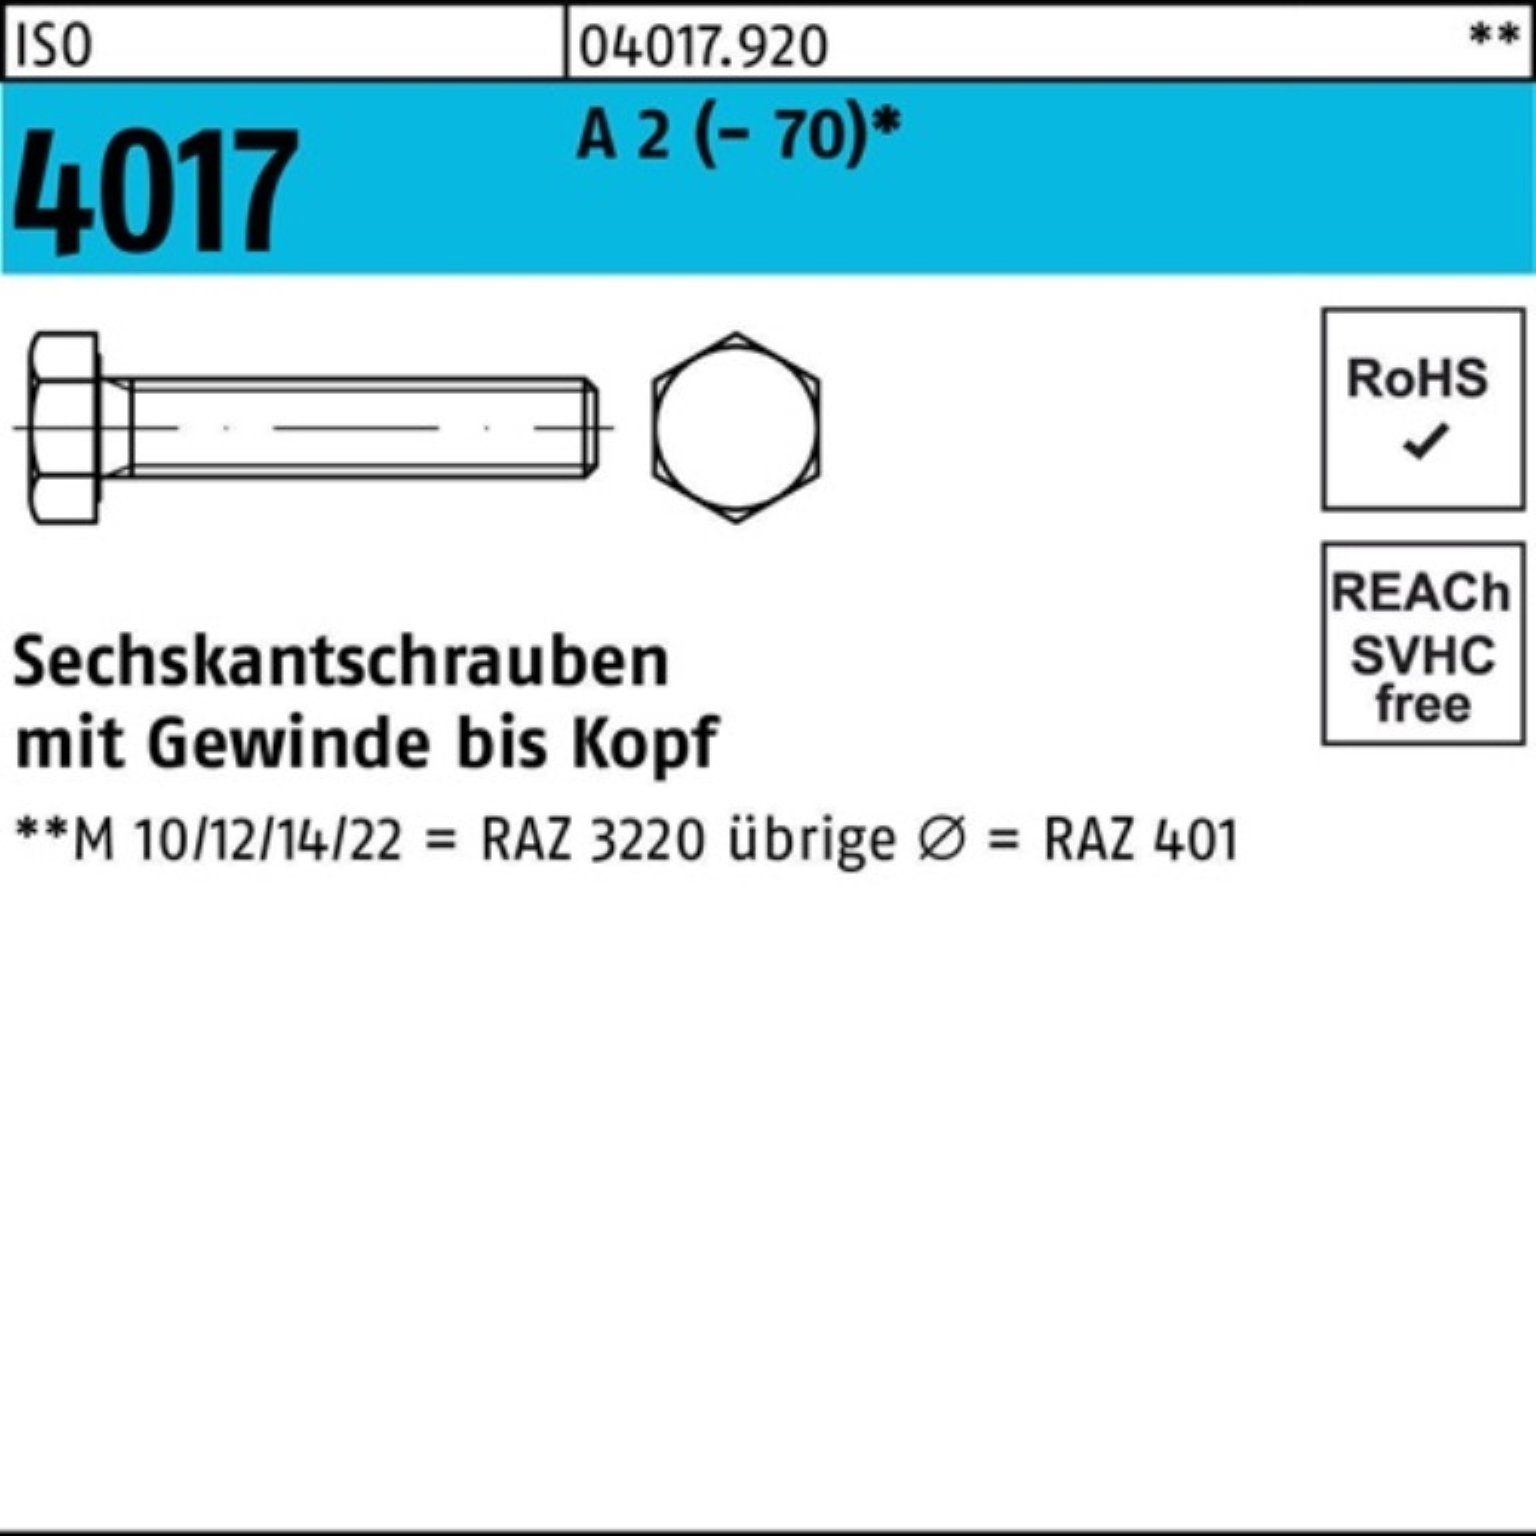 35 Sechskantschraube 2 ISO VG 4017 (70) 100er Sechskantschraube Bufab Pack 100 Stück A M12x